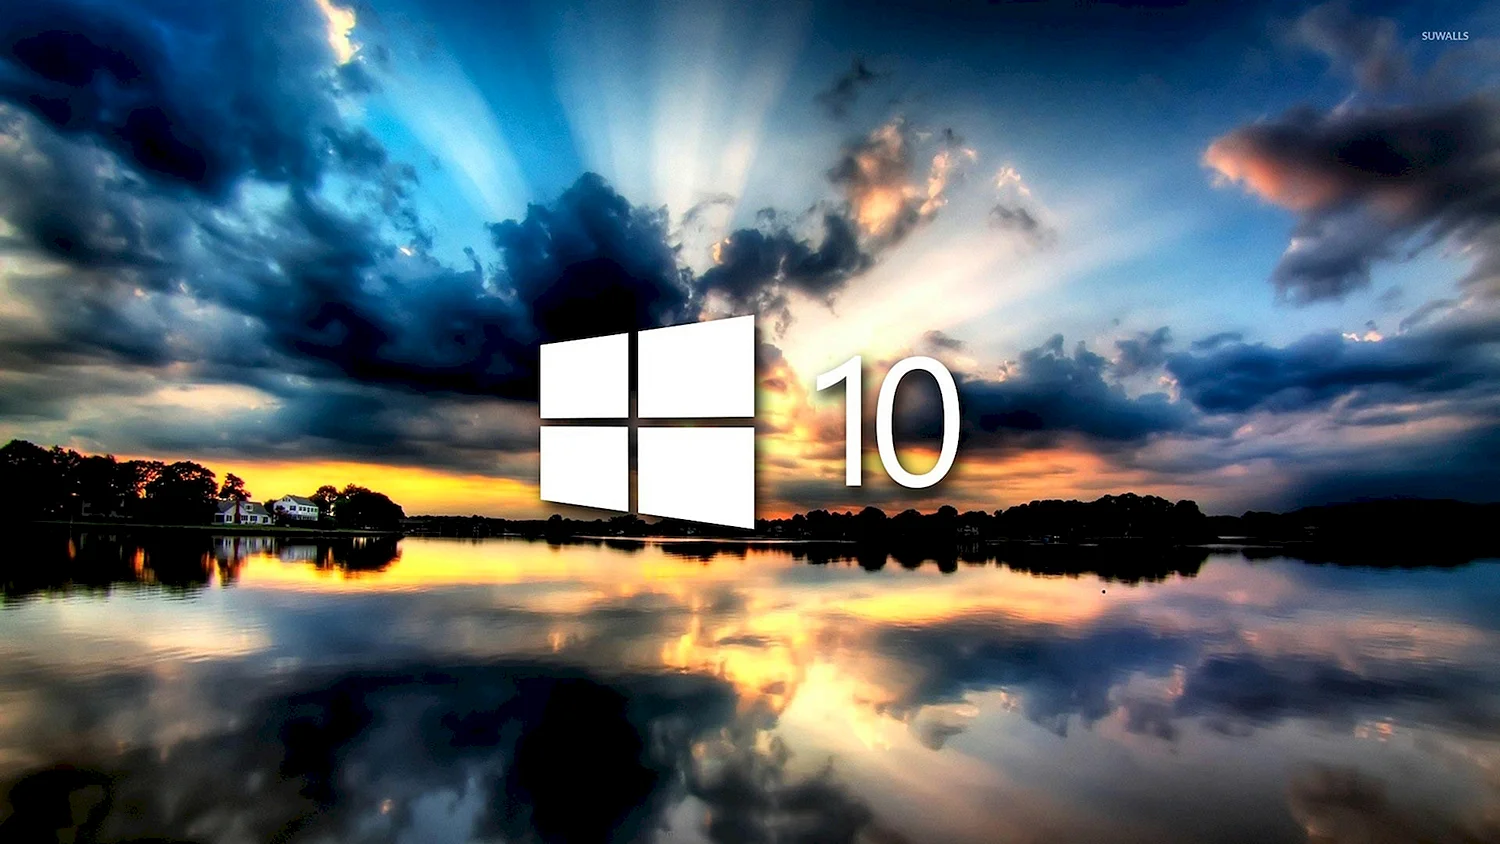 Фоновые изображения для рабочего стола Windows 10